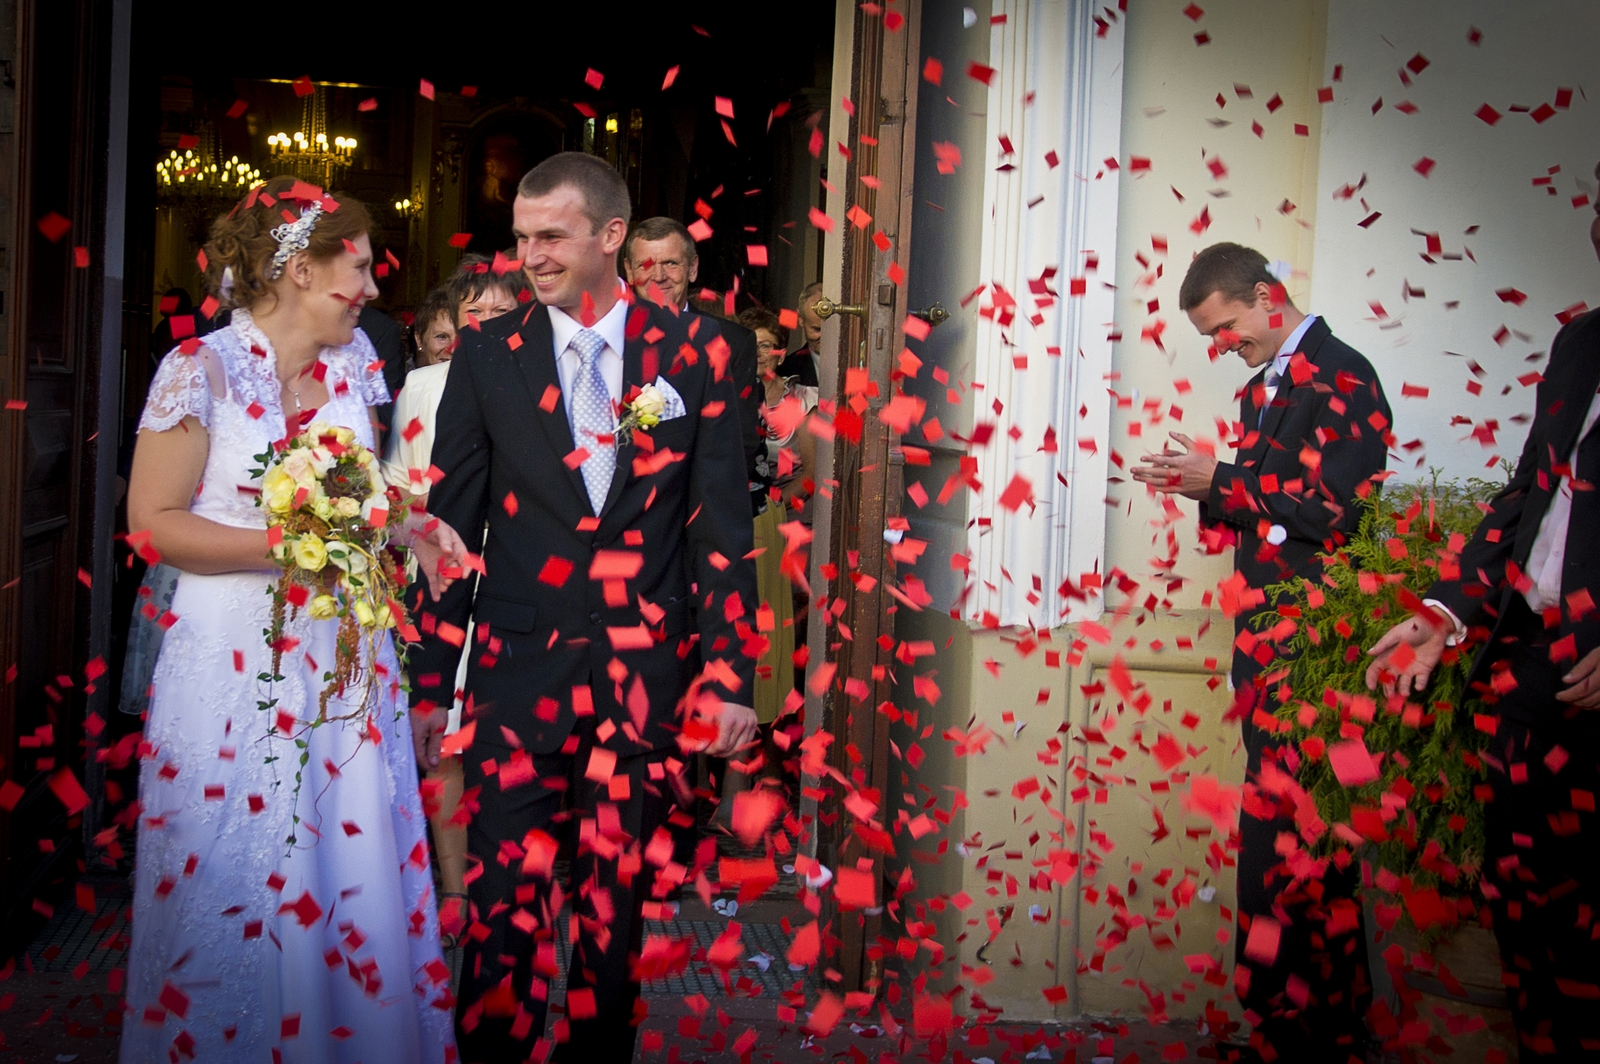 Zabawa weselna i taniec weselny na zdjęciach ślubnych warszawskiego studio fotografii